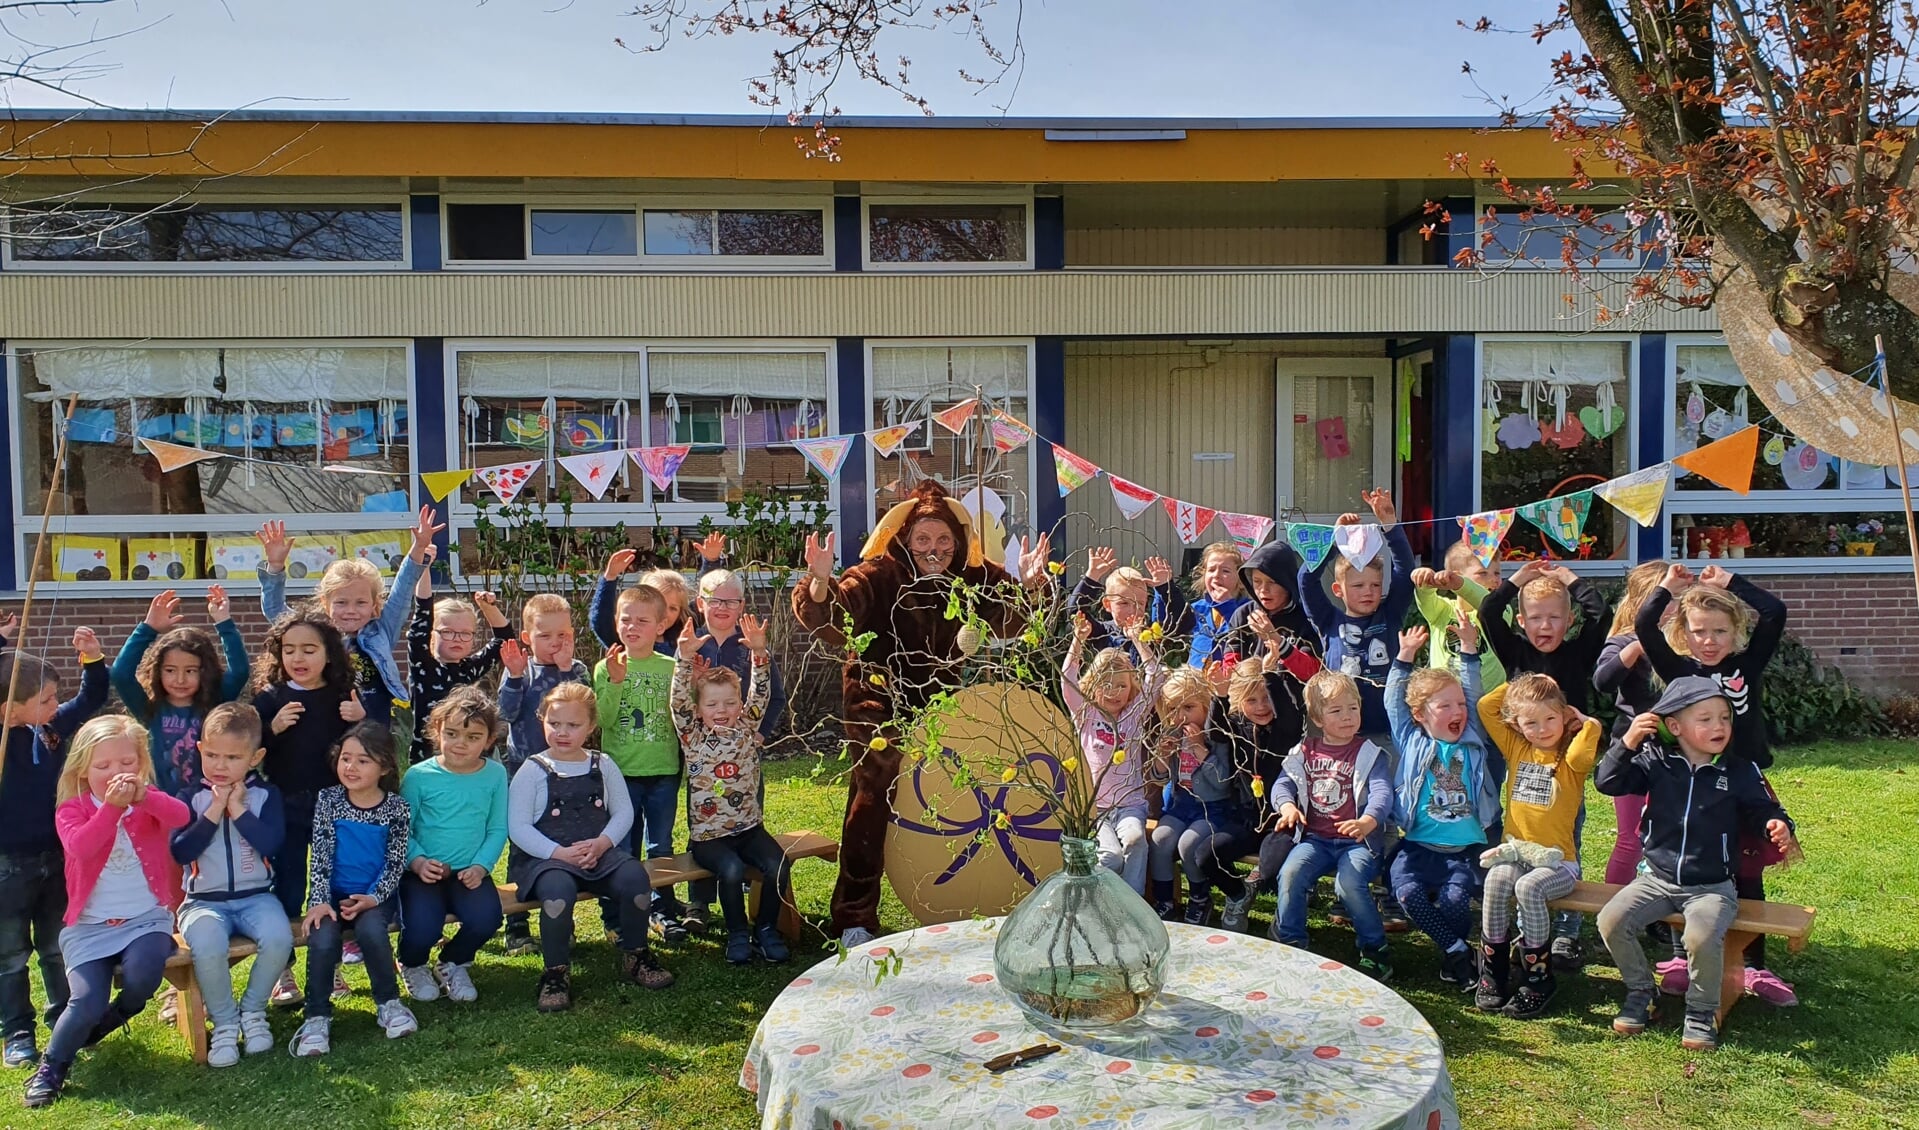 Vrolijke paasmiddag bij School Noord in Borculo. Foto: Elsbeth Heinen